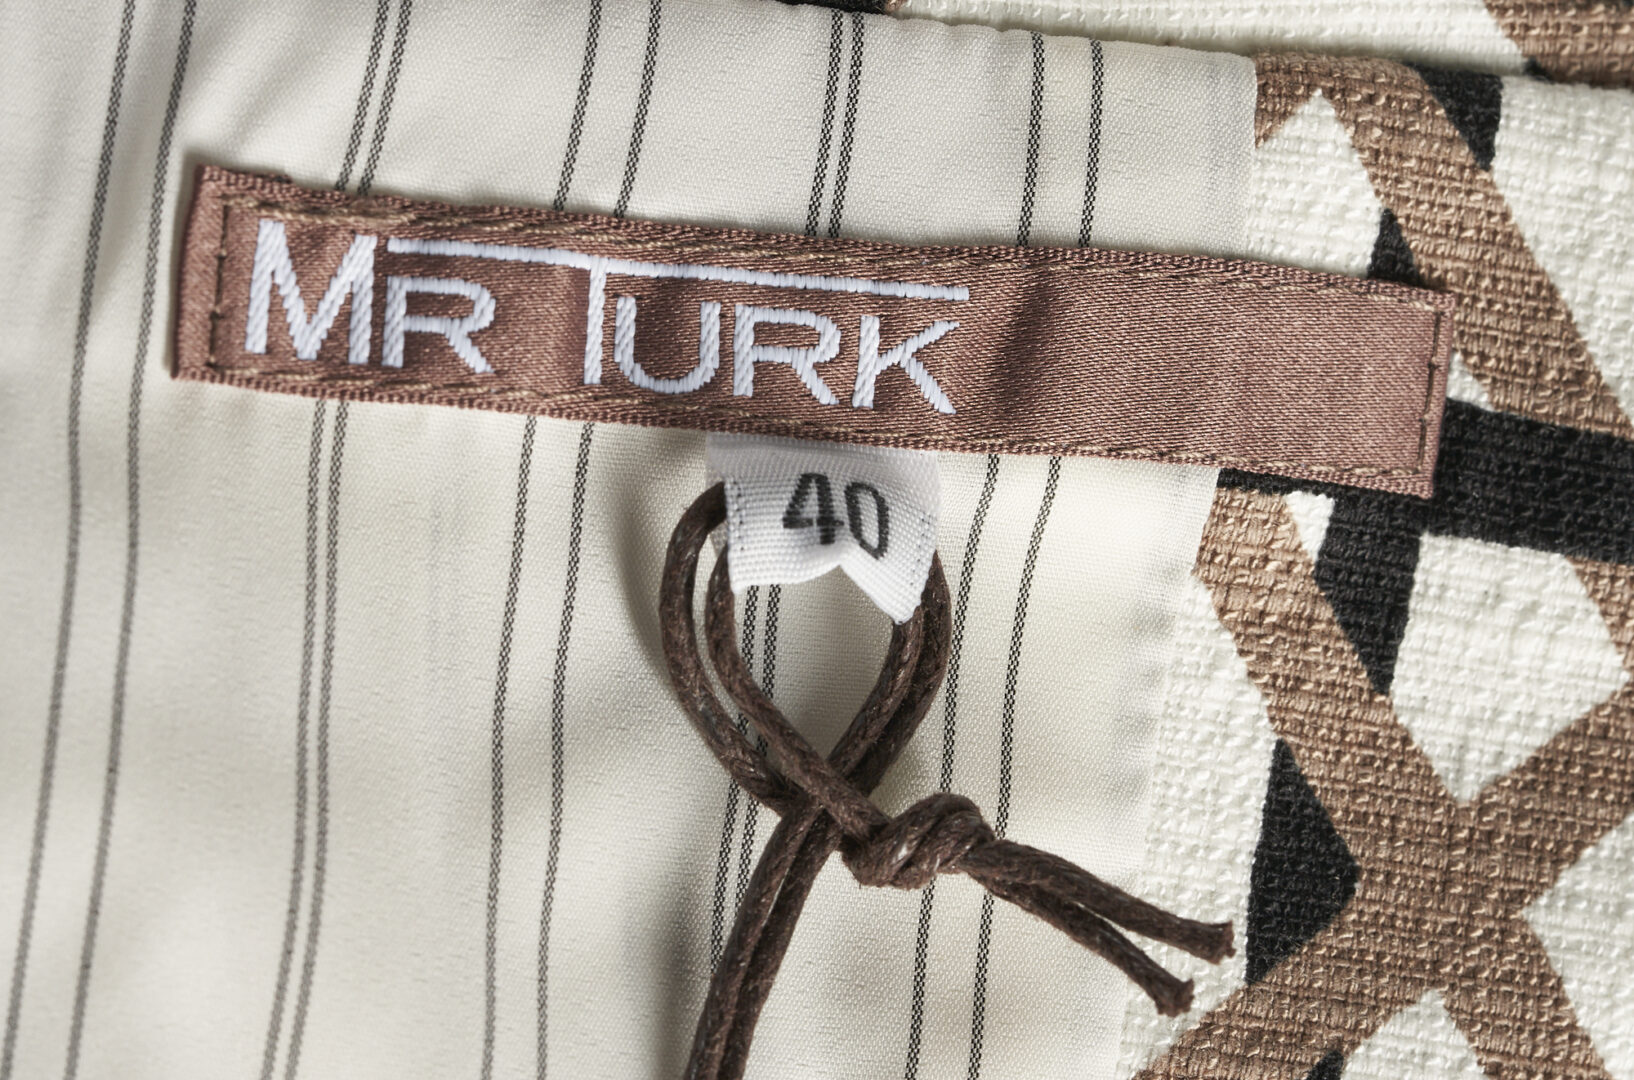 Lot 167: 3 Mr. Turk Men's Garments, incl. Two-Piece Suit